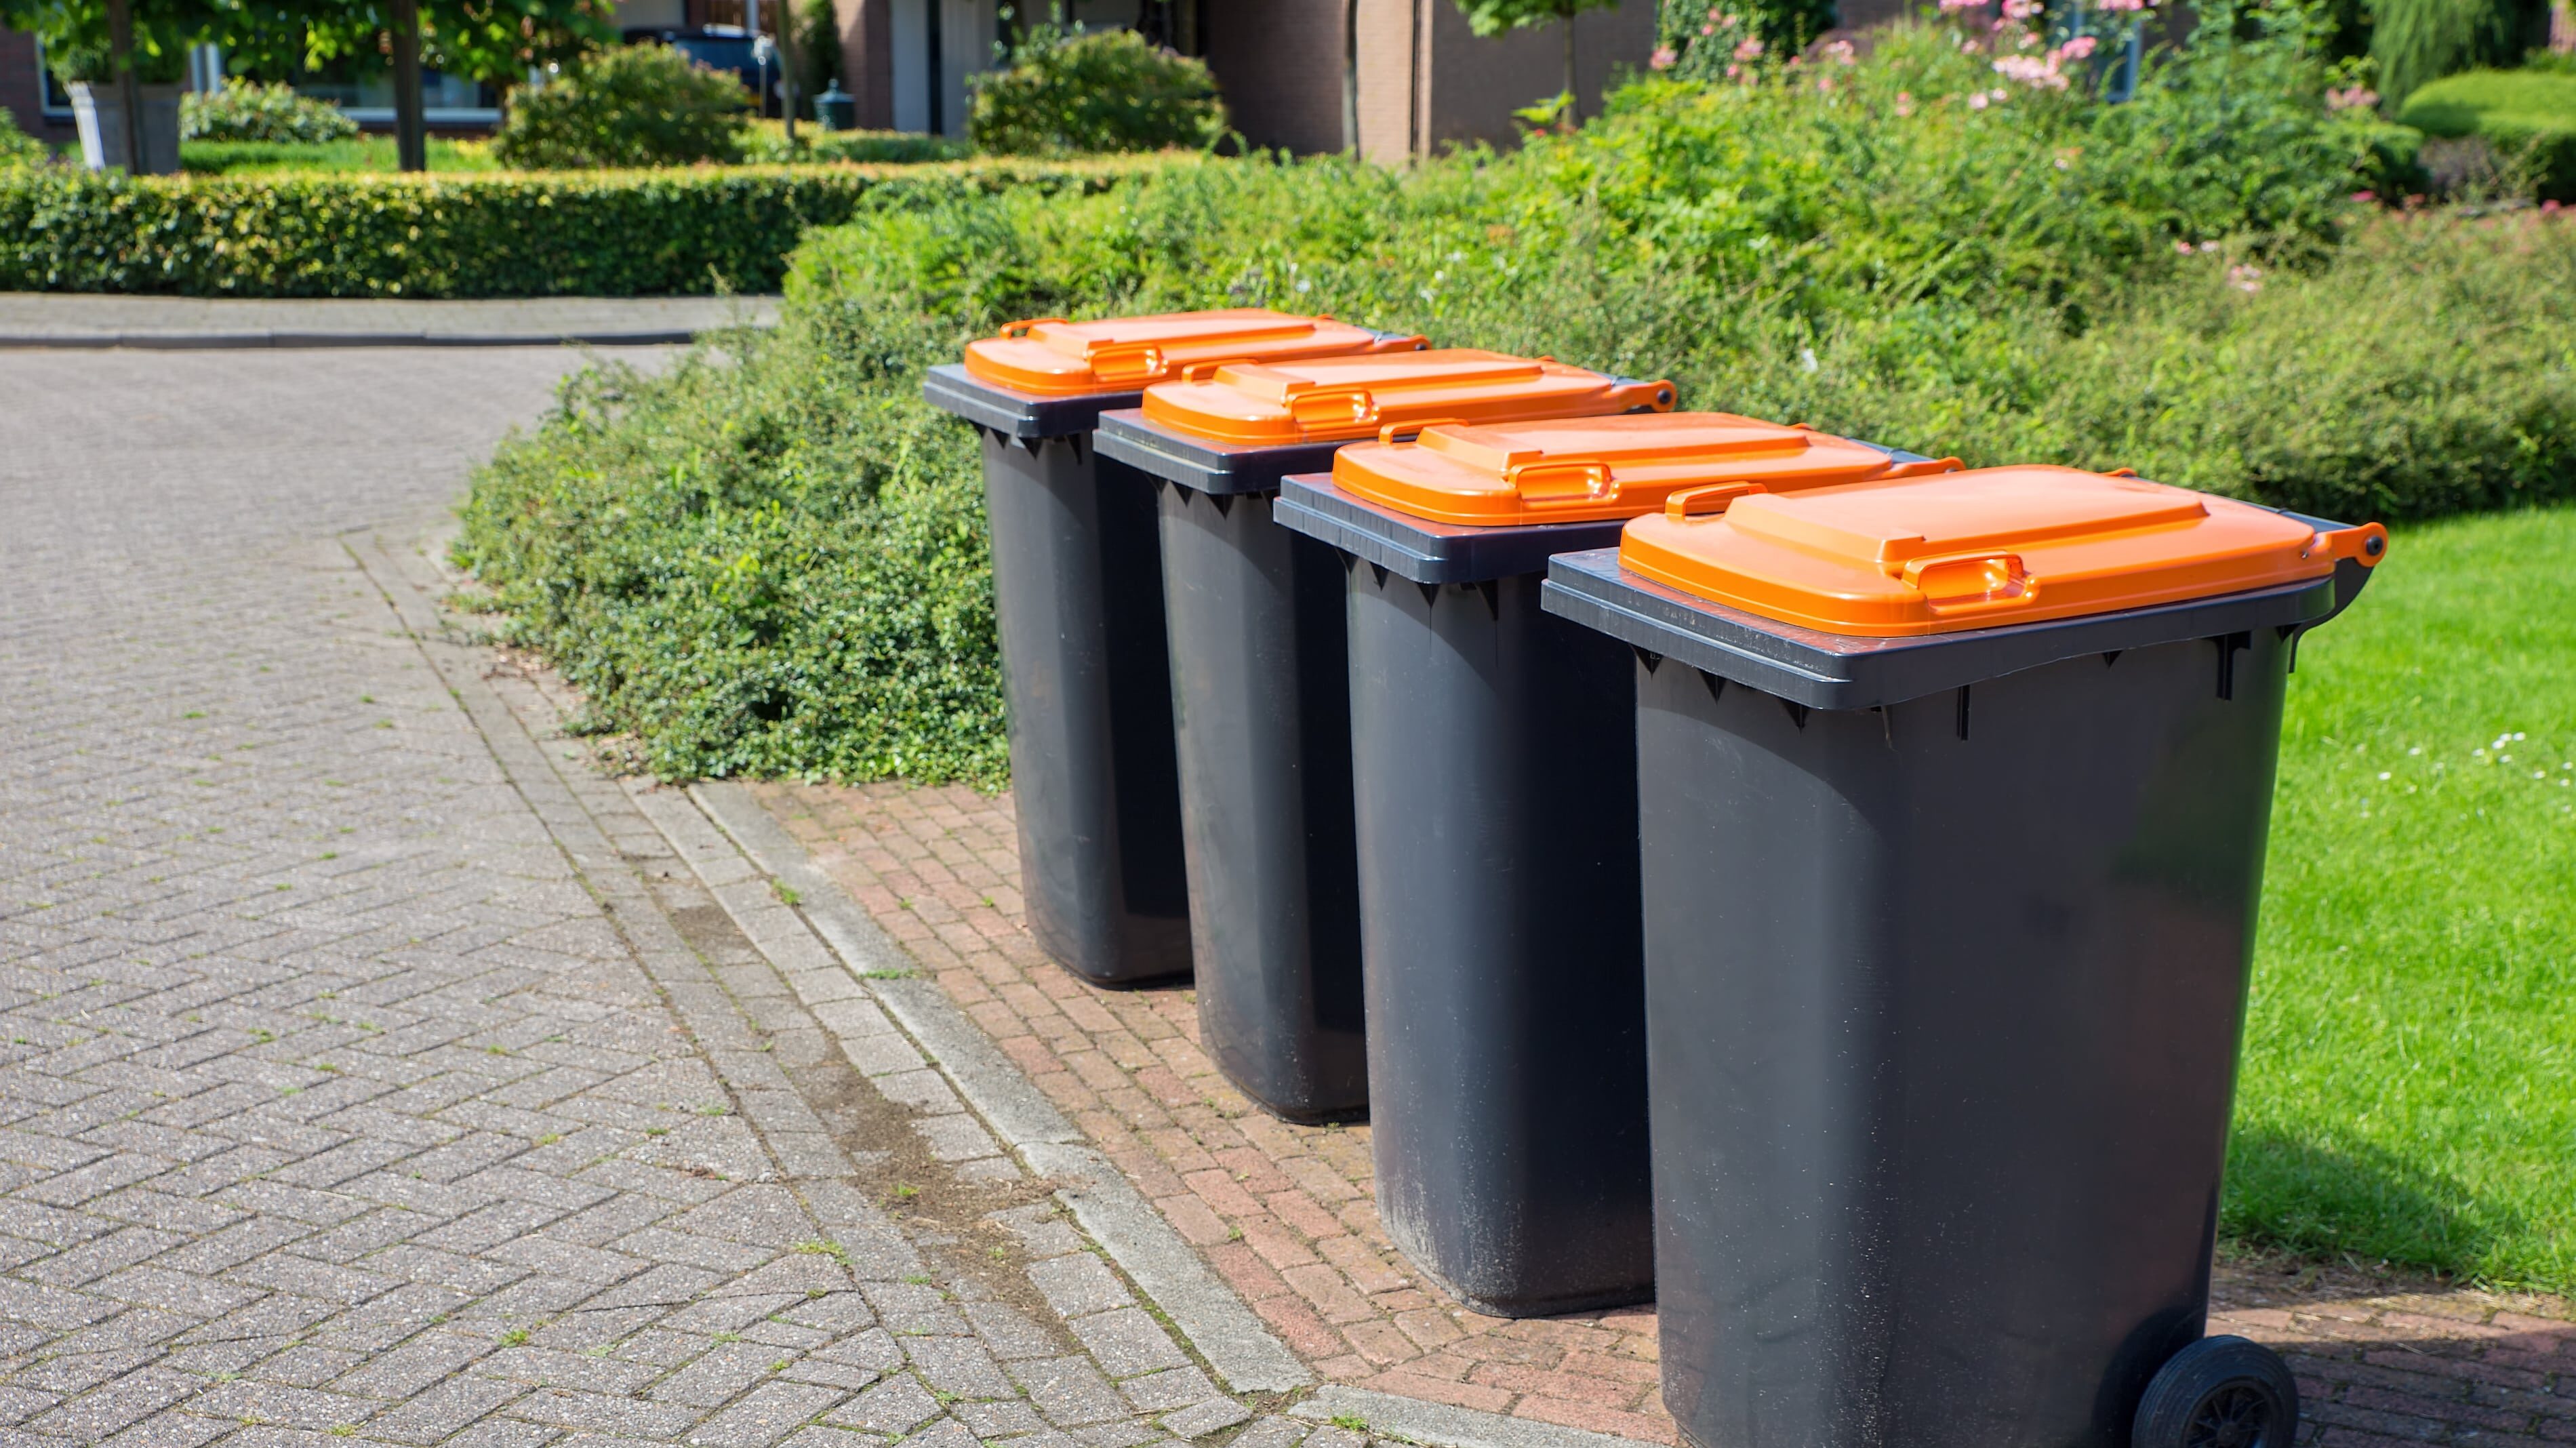 Row of dutch grey waste bins along street